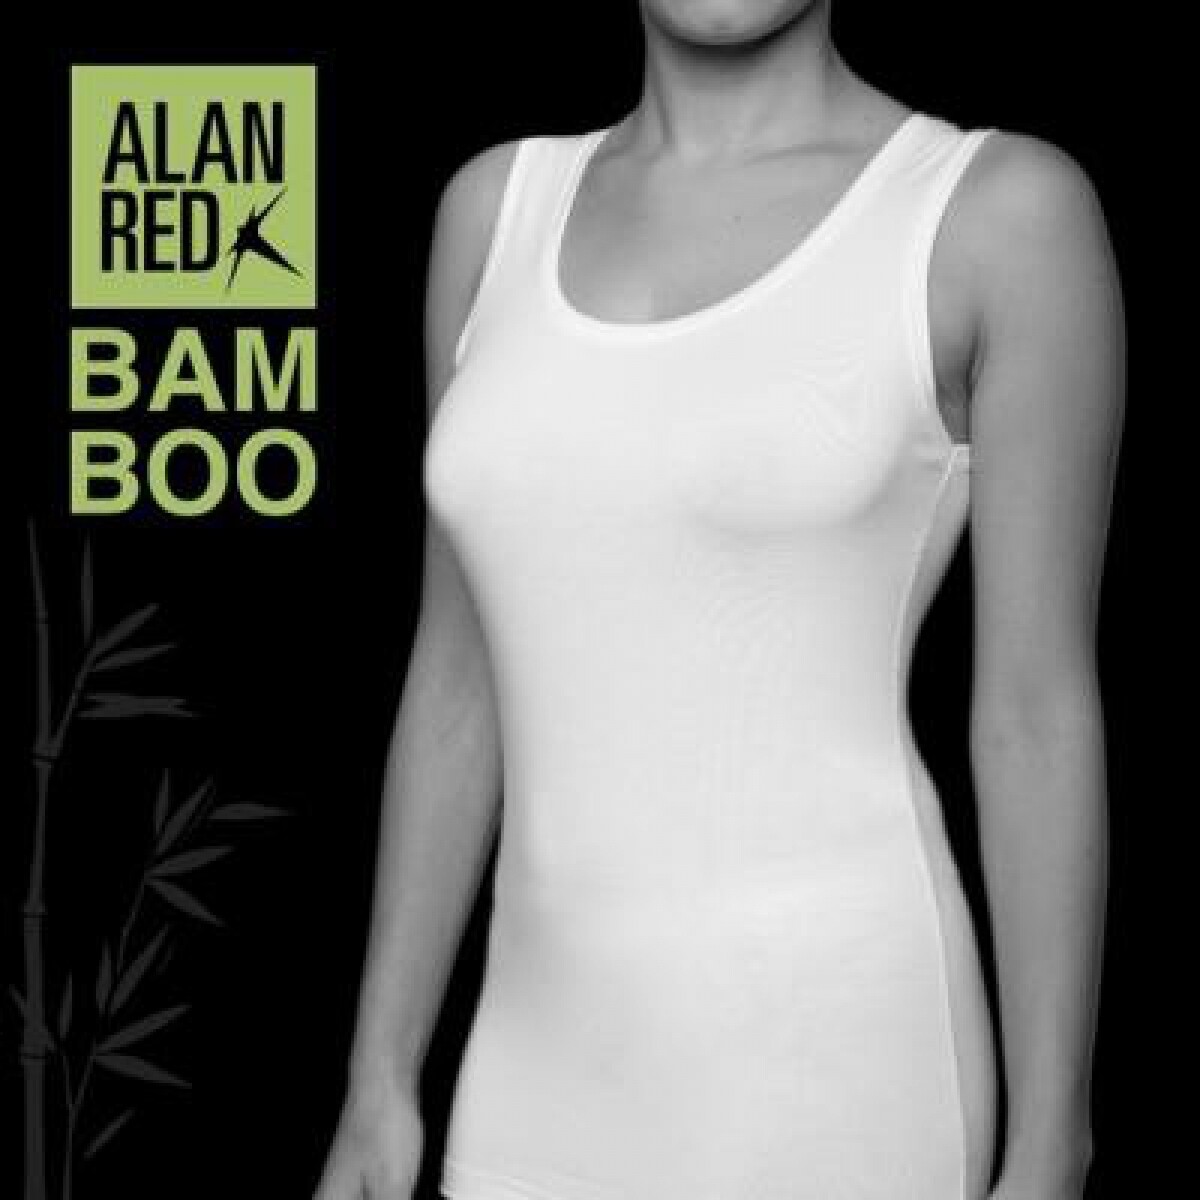 Alan Red - Barbara navy